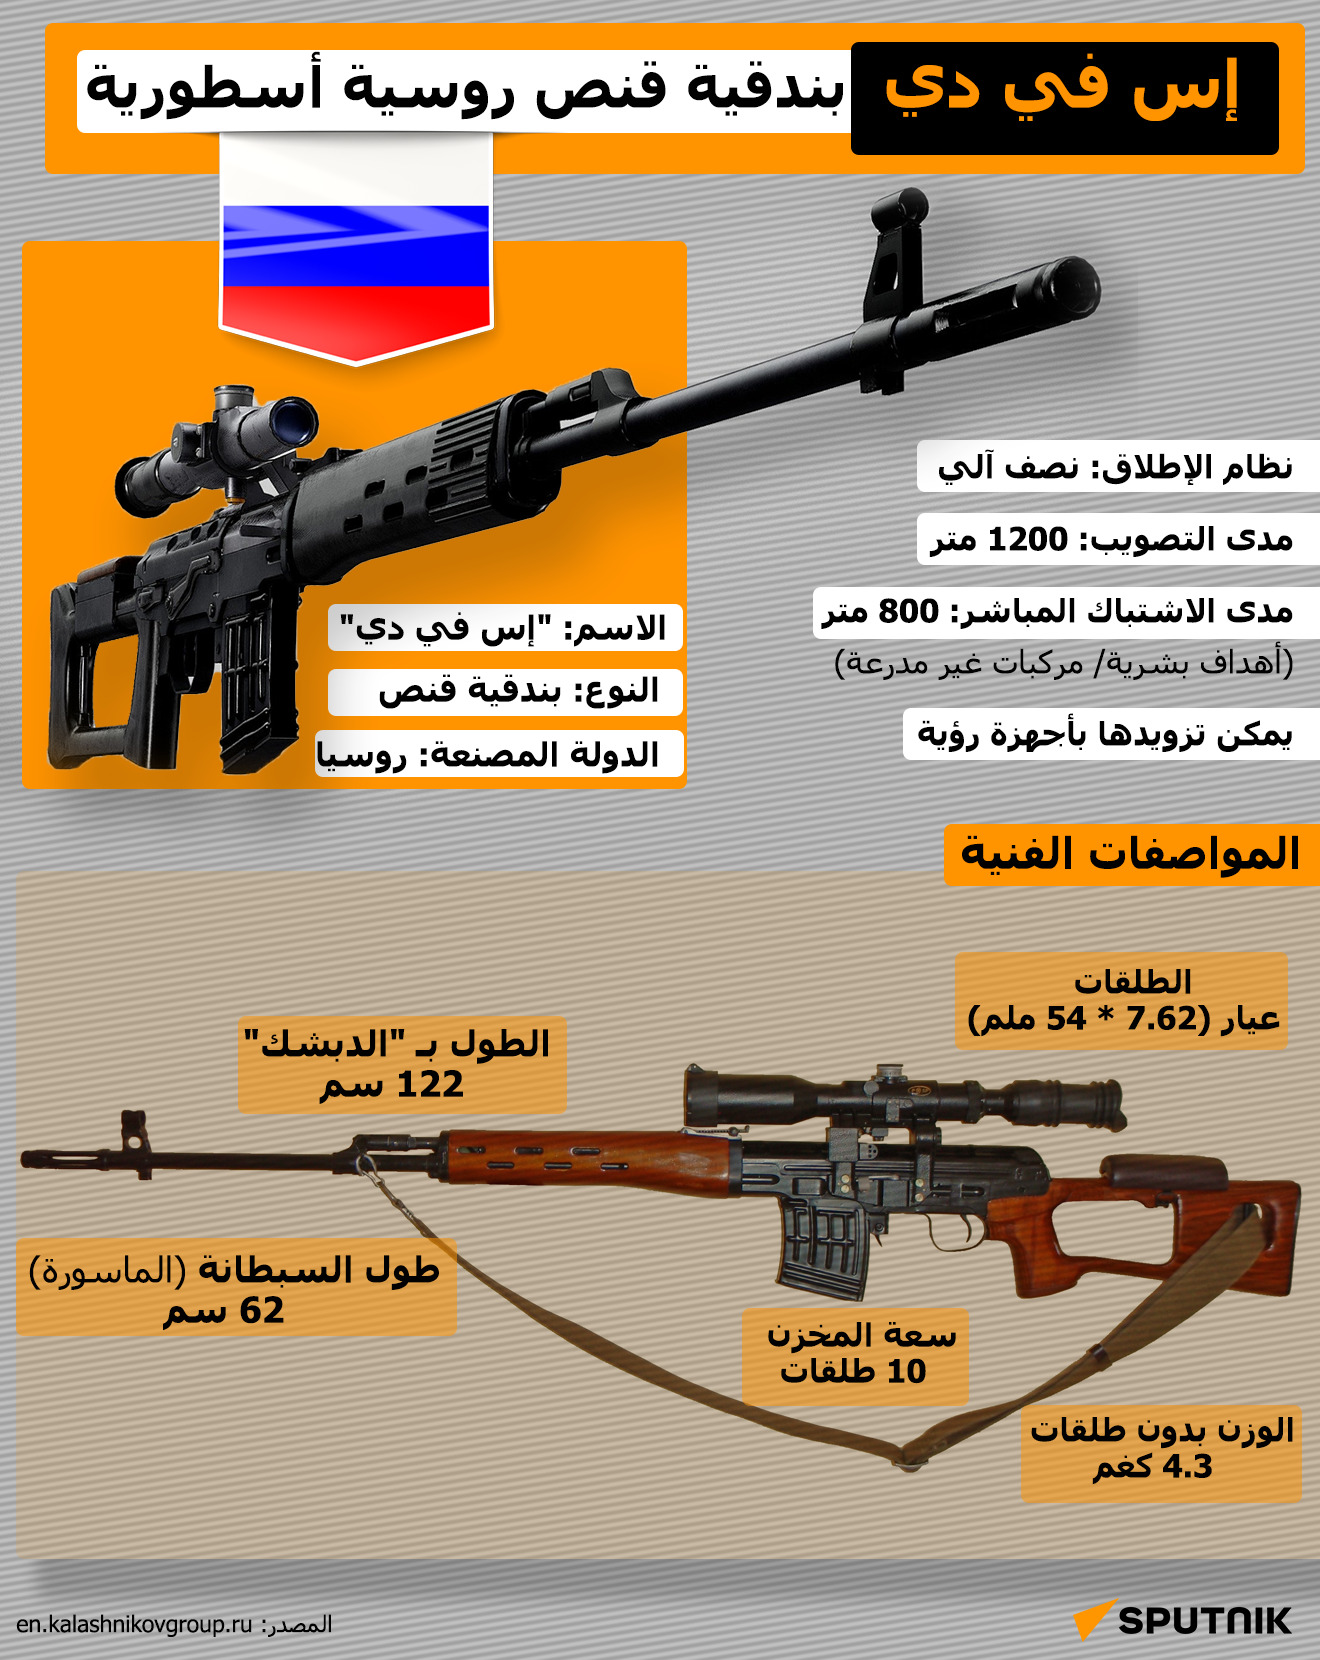 إنفوجراف | إس في دي... بندقية قنص روسية أسطورية - سبوتنيك عربي